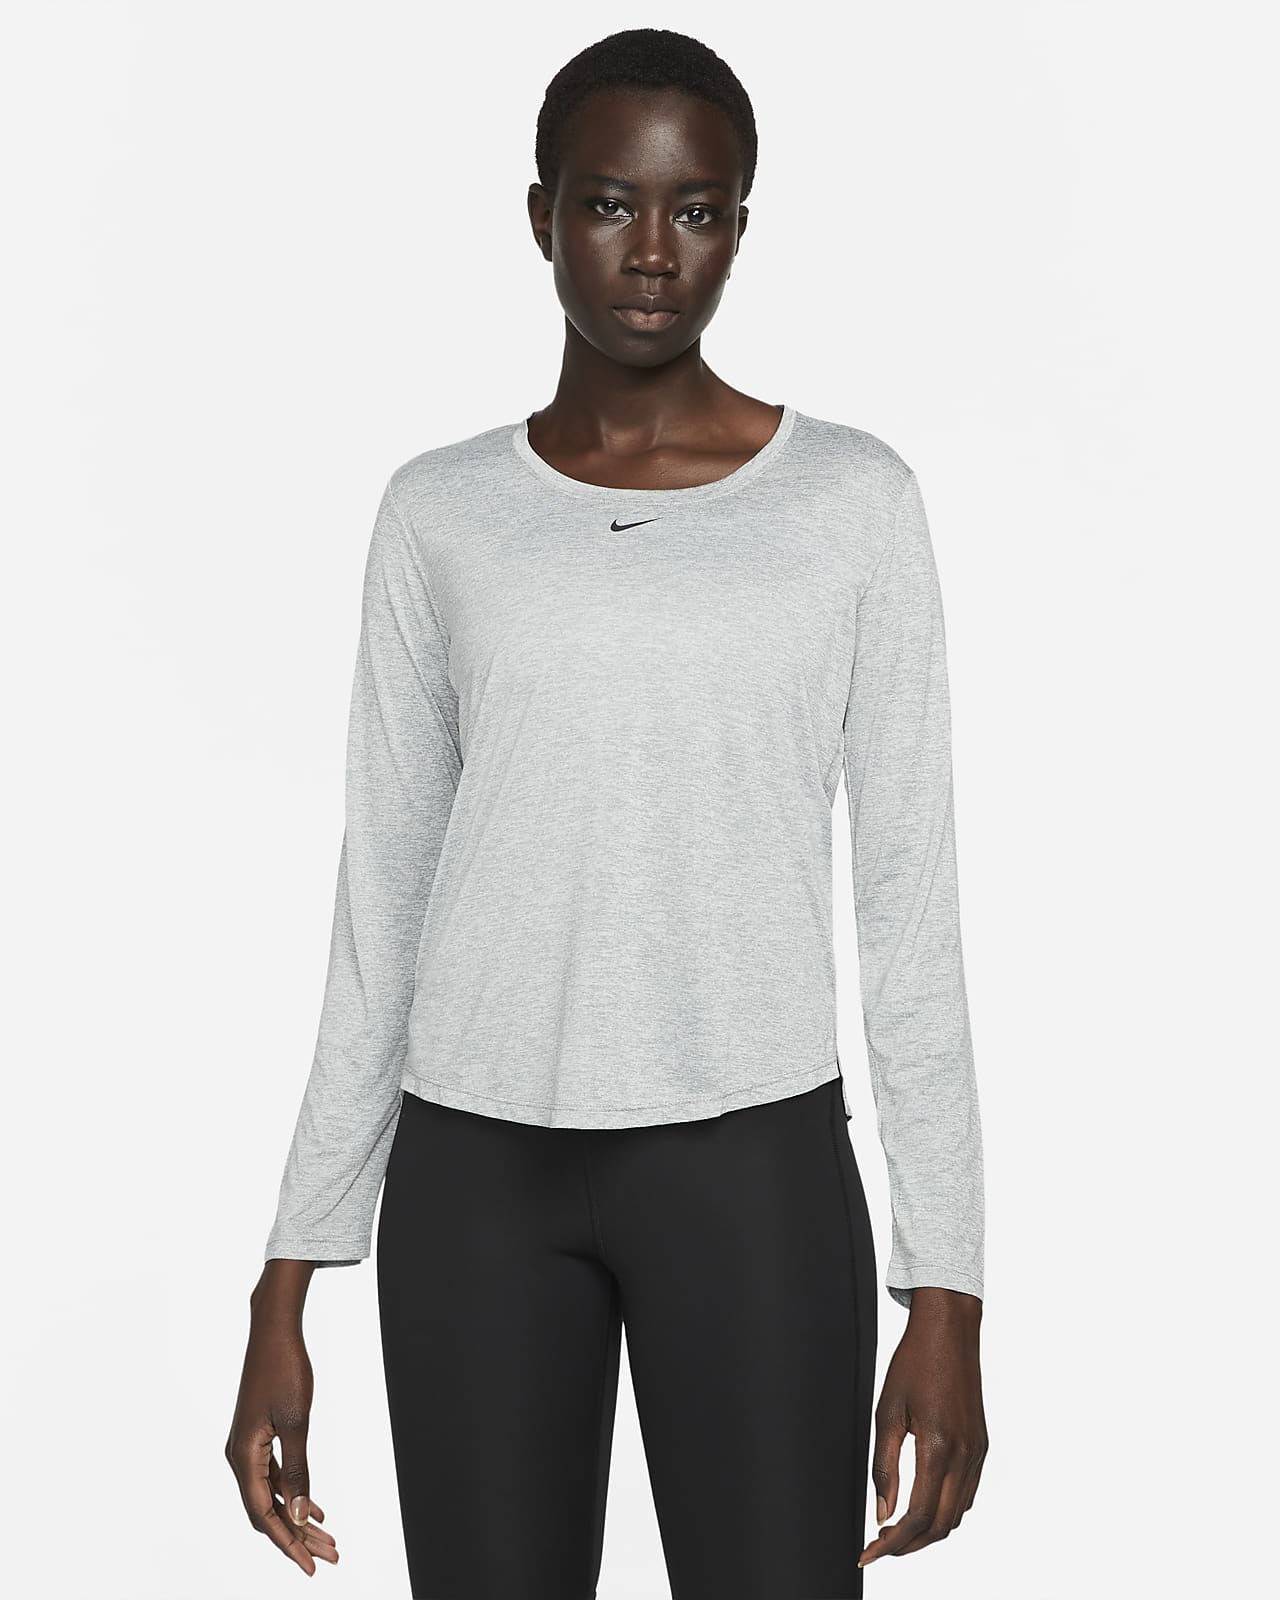 Nike Dri-FIT One Women's Standard Fit Long-Sleeve Top